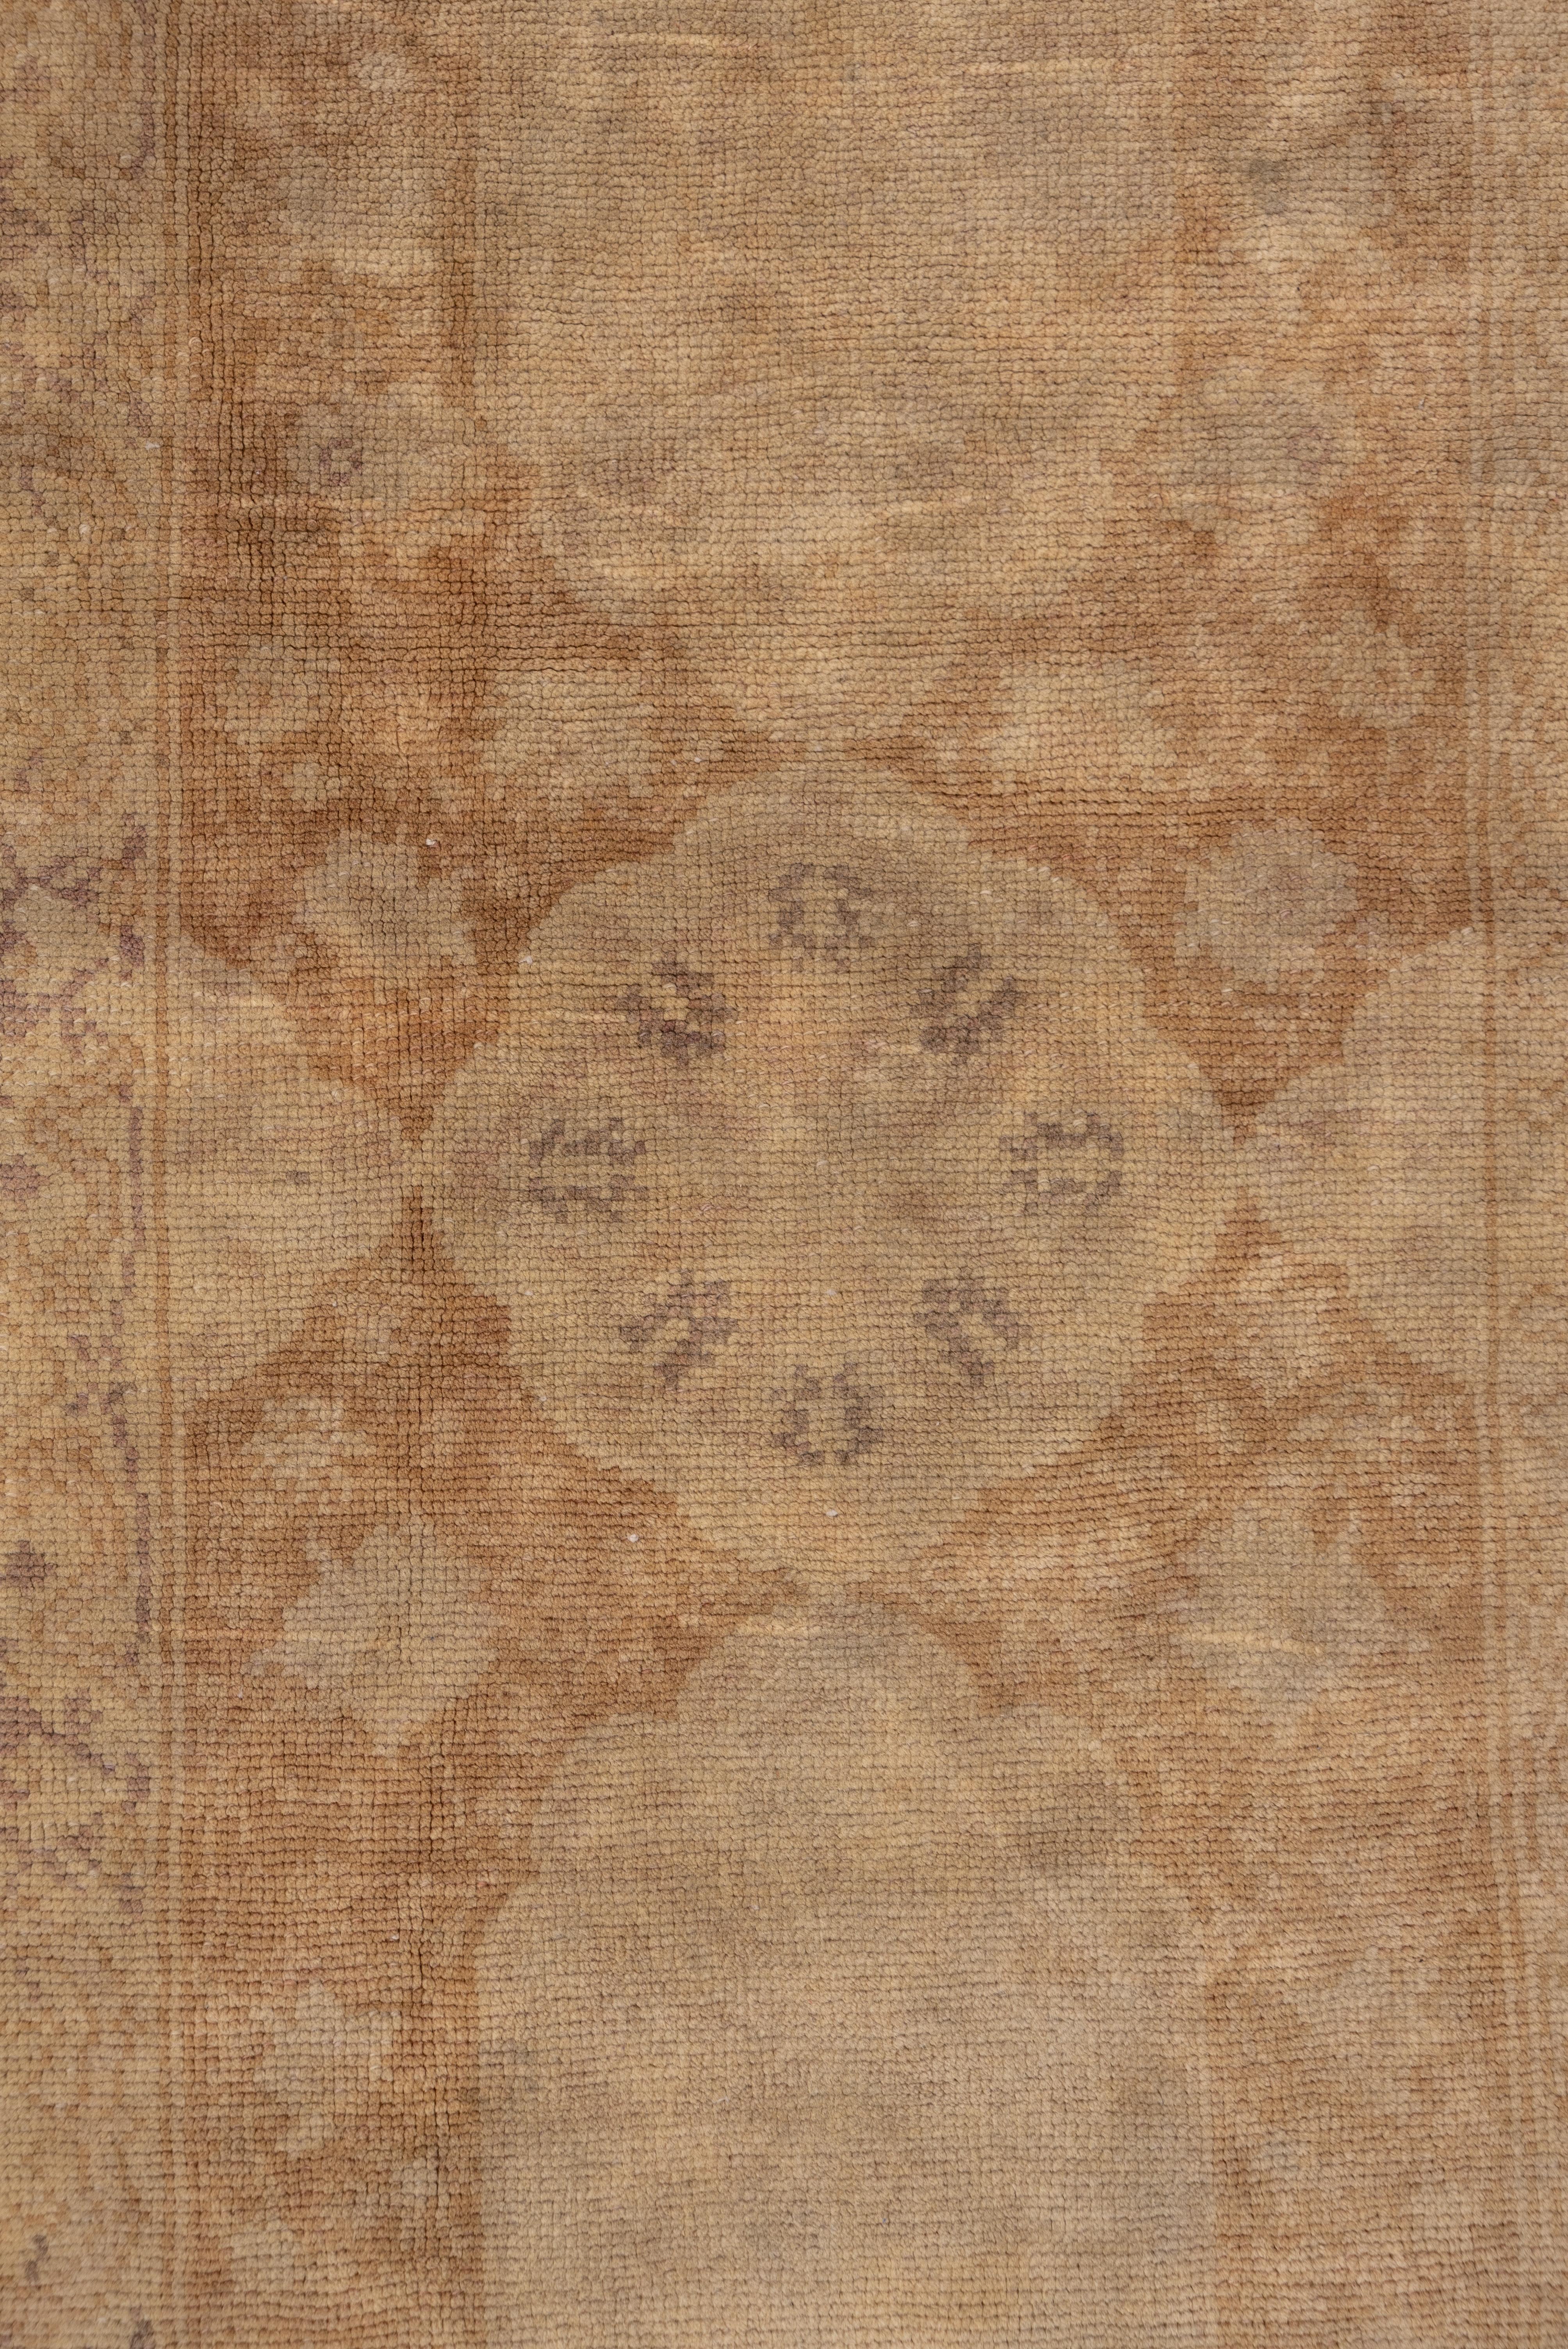 Wool Squarish Sivas Carpet, circa 1920s For Sale